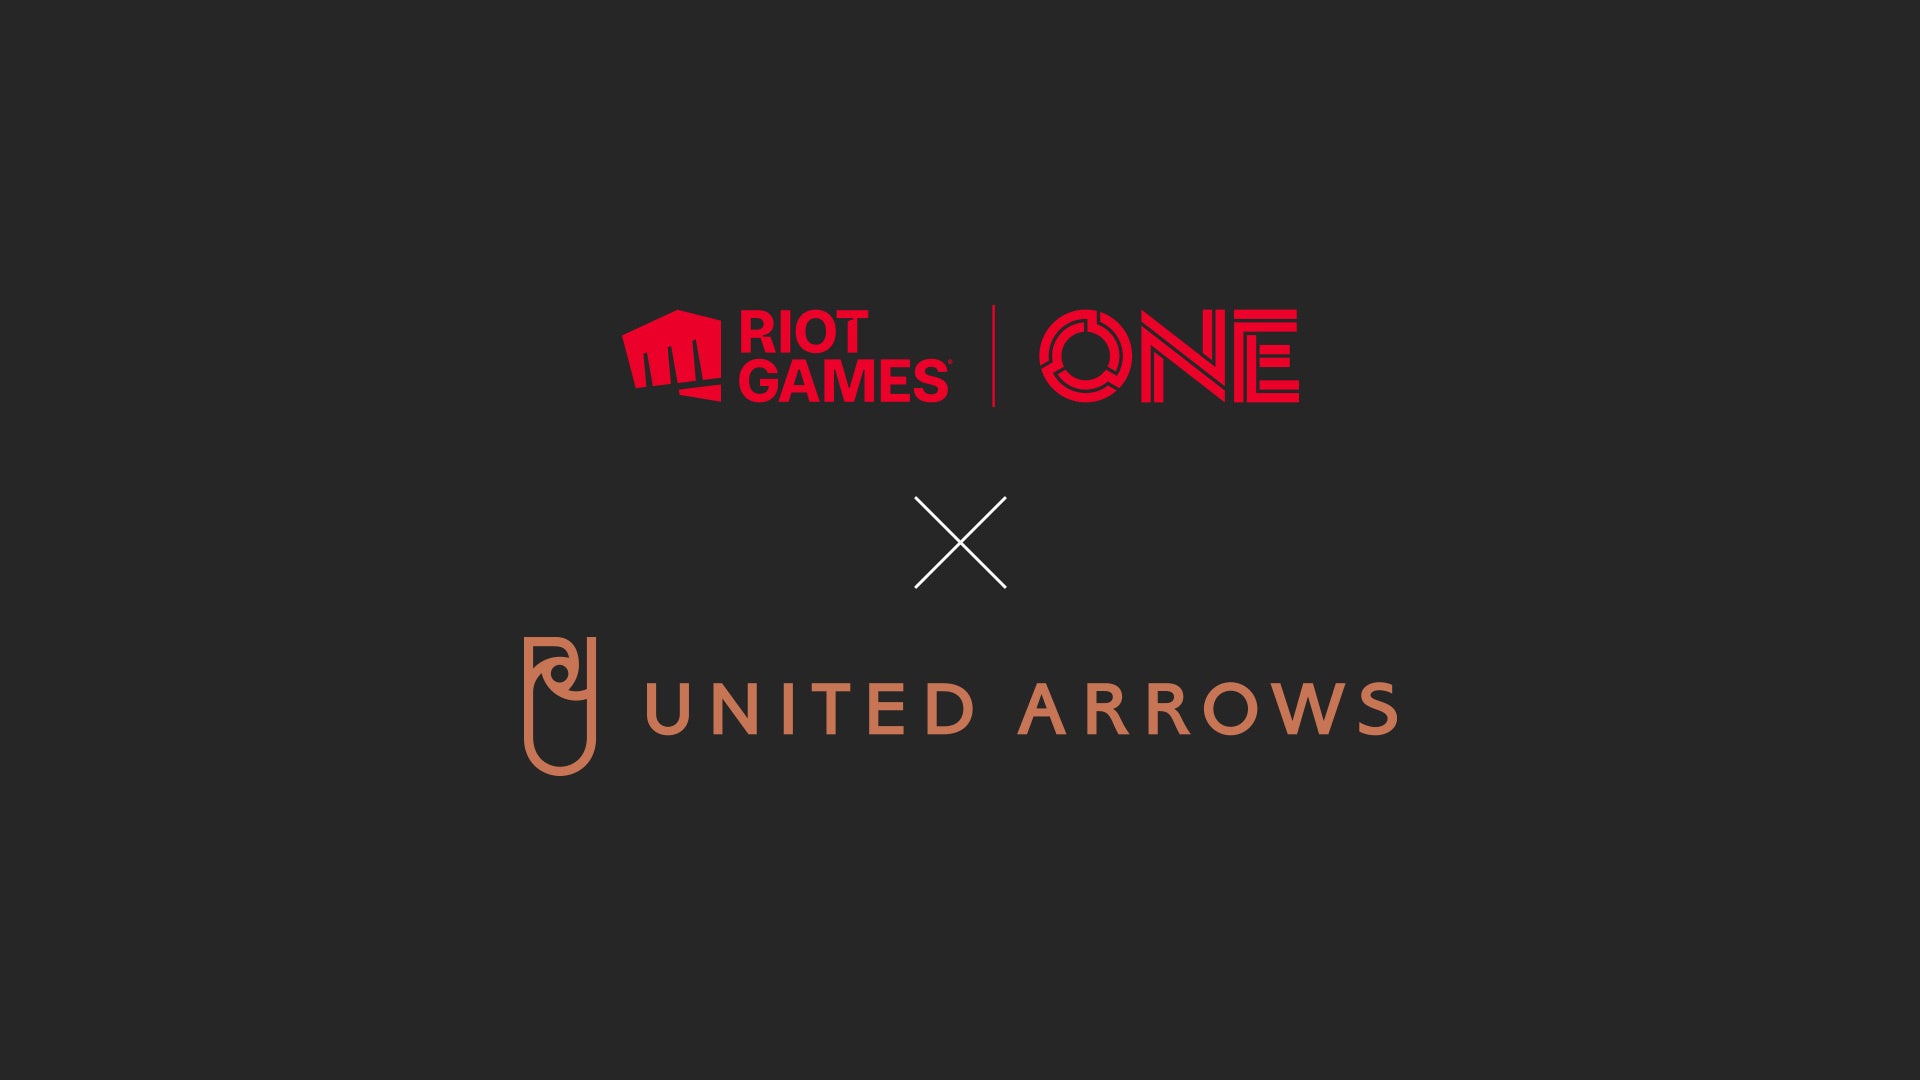 Riot Games ONExUNITED ARROWSのコラボレーションが決定UNITED ARROWSプロデュースの日本限定VALORANTグッズが12月23日、24日のオフラインイベントで販売